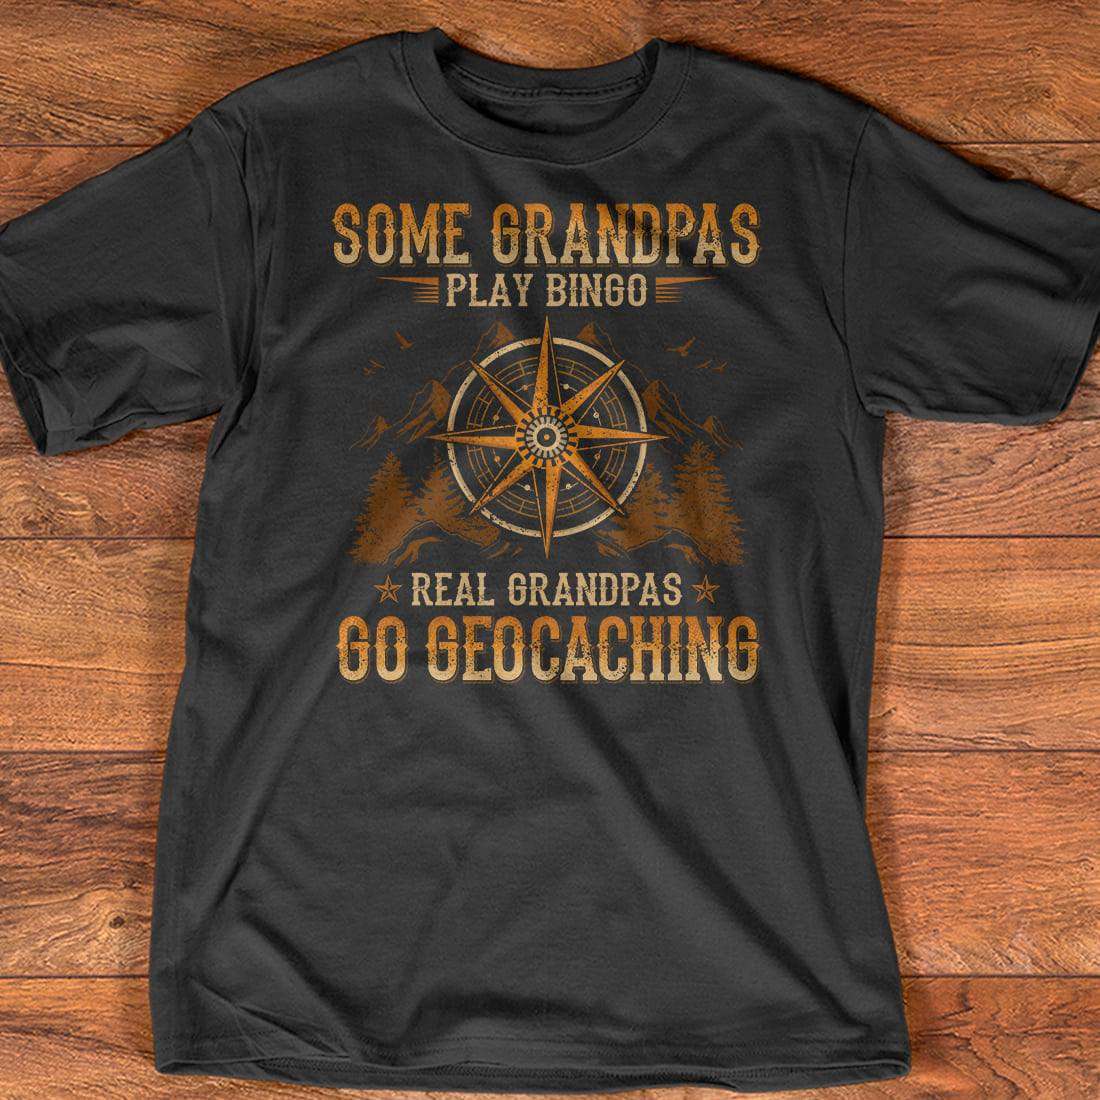 Some grandpas play bingo real grandpas go geocaching - The compass